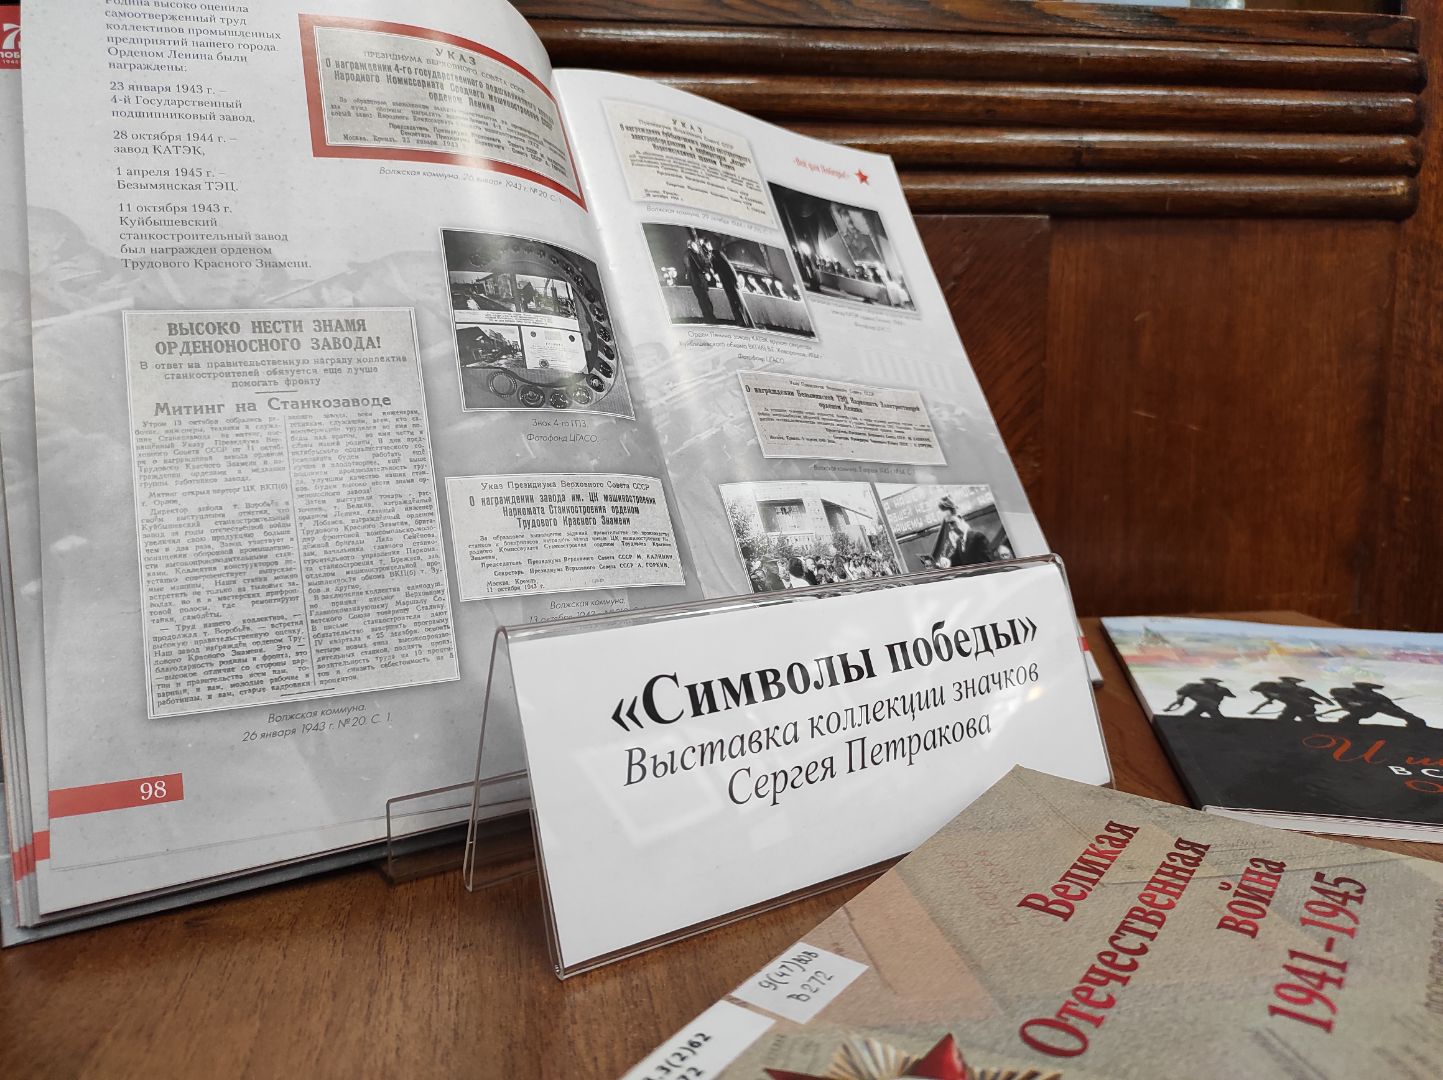 Выставка значков «Символы Победы» открылась на Петровских Линиях